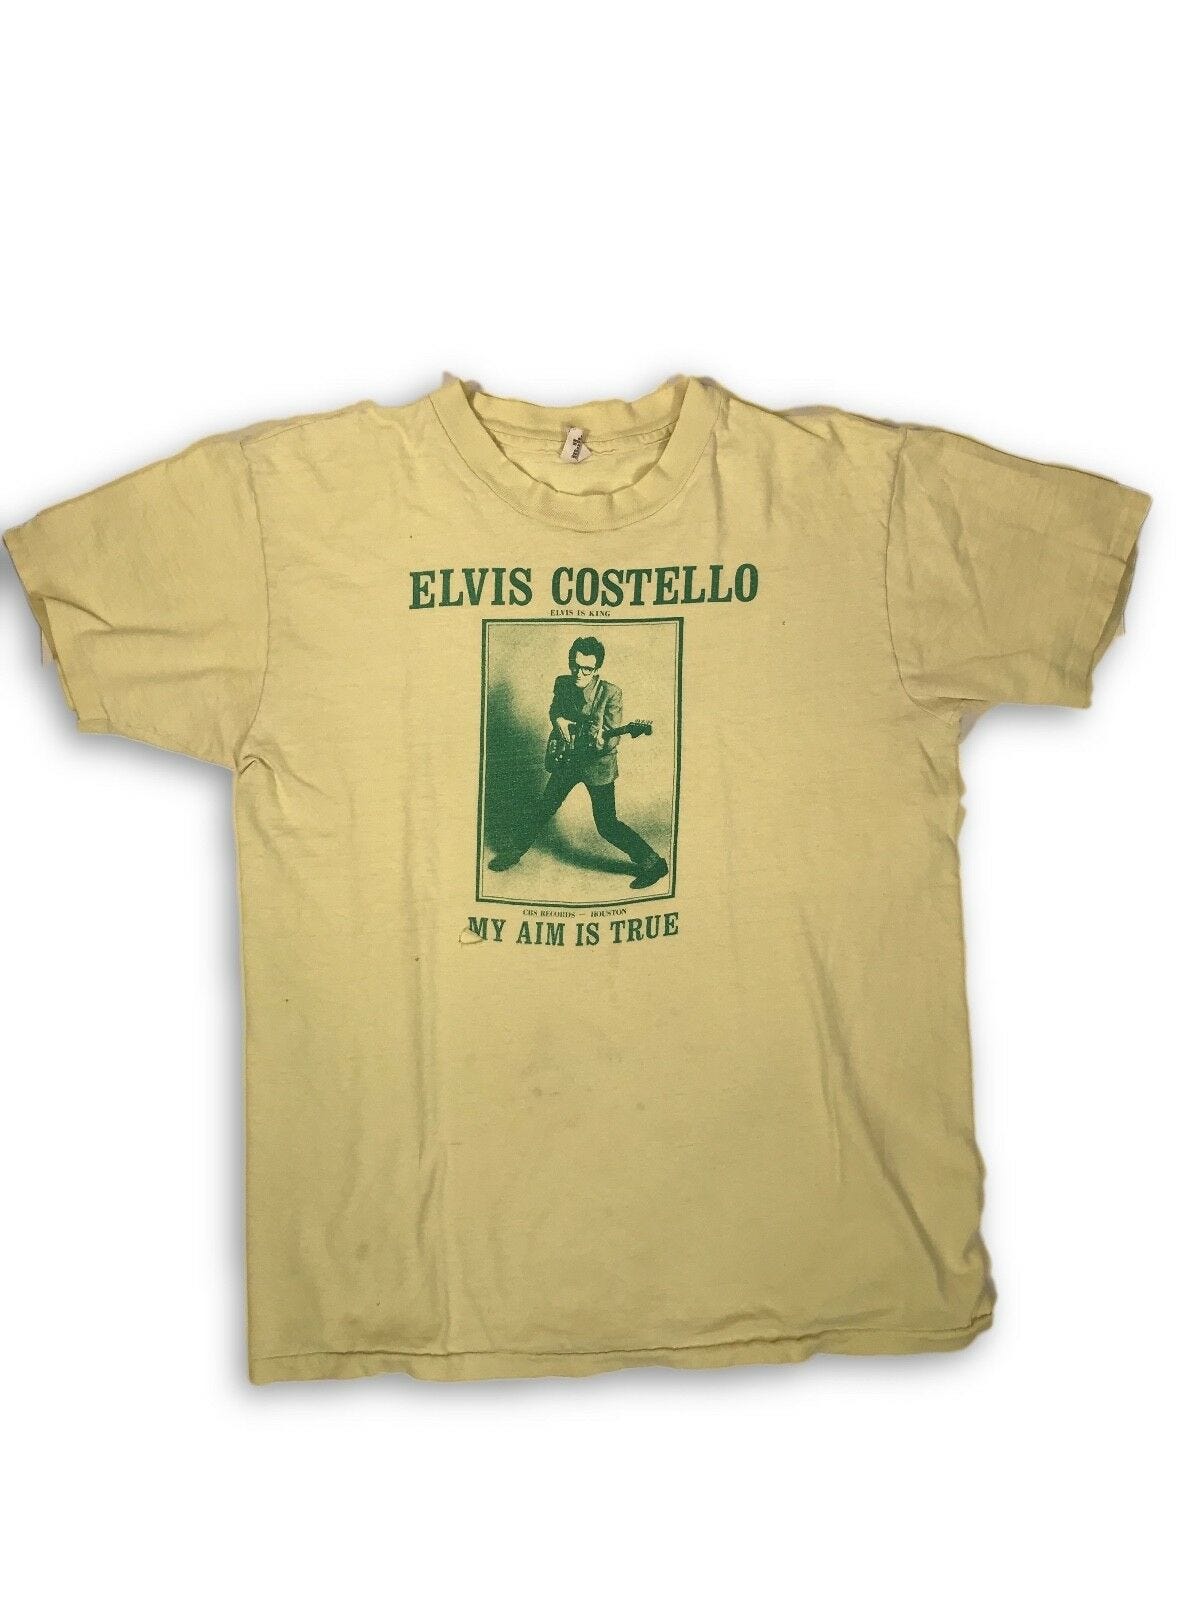 Image 1 - Vintage VTG 1977 Elvis Costello My Aim Is True Promo Tour T-Shirt 